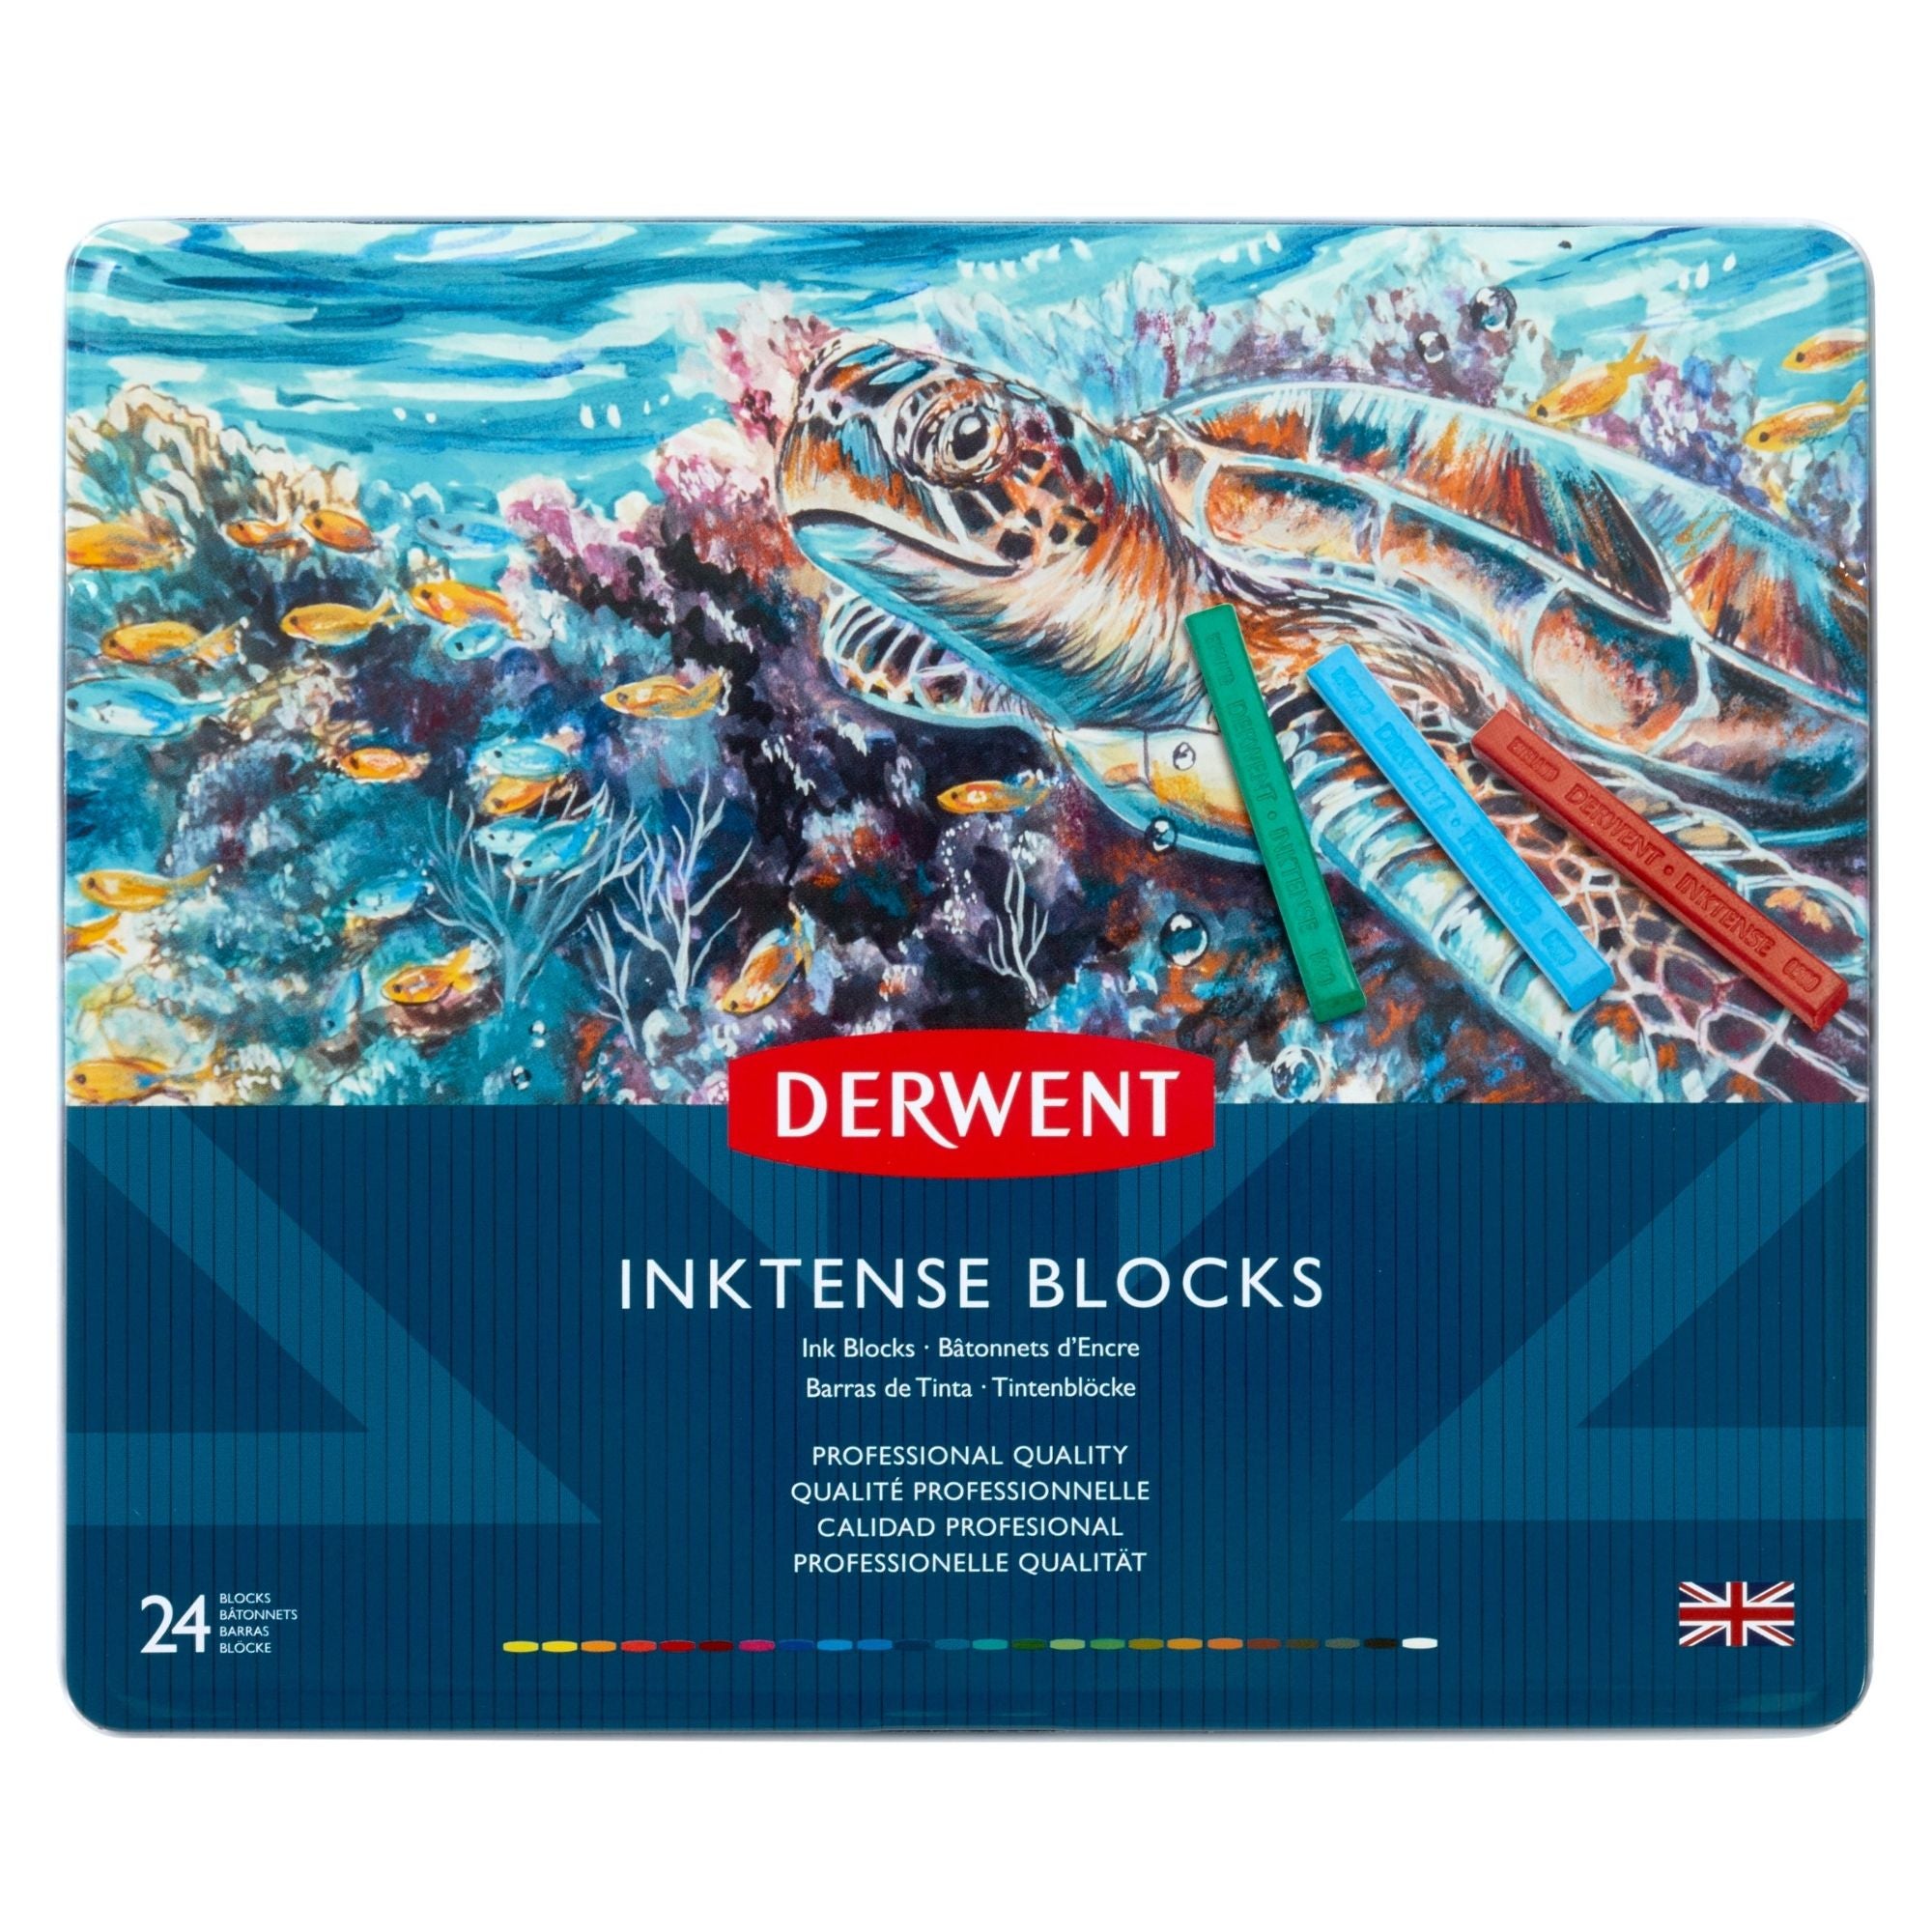 Derwent Inktense Blocks - Metal Tin Set of 24